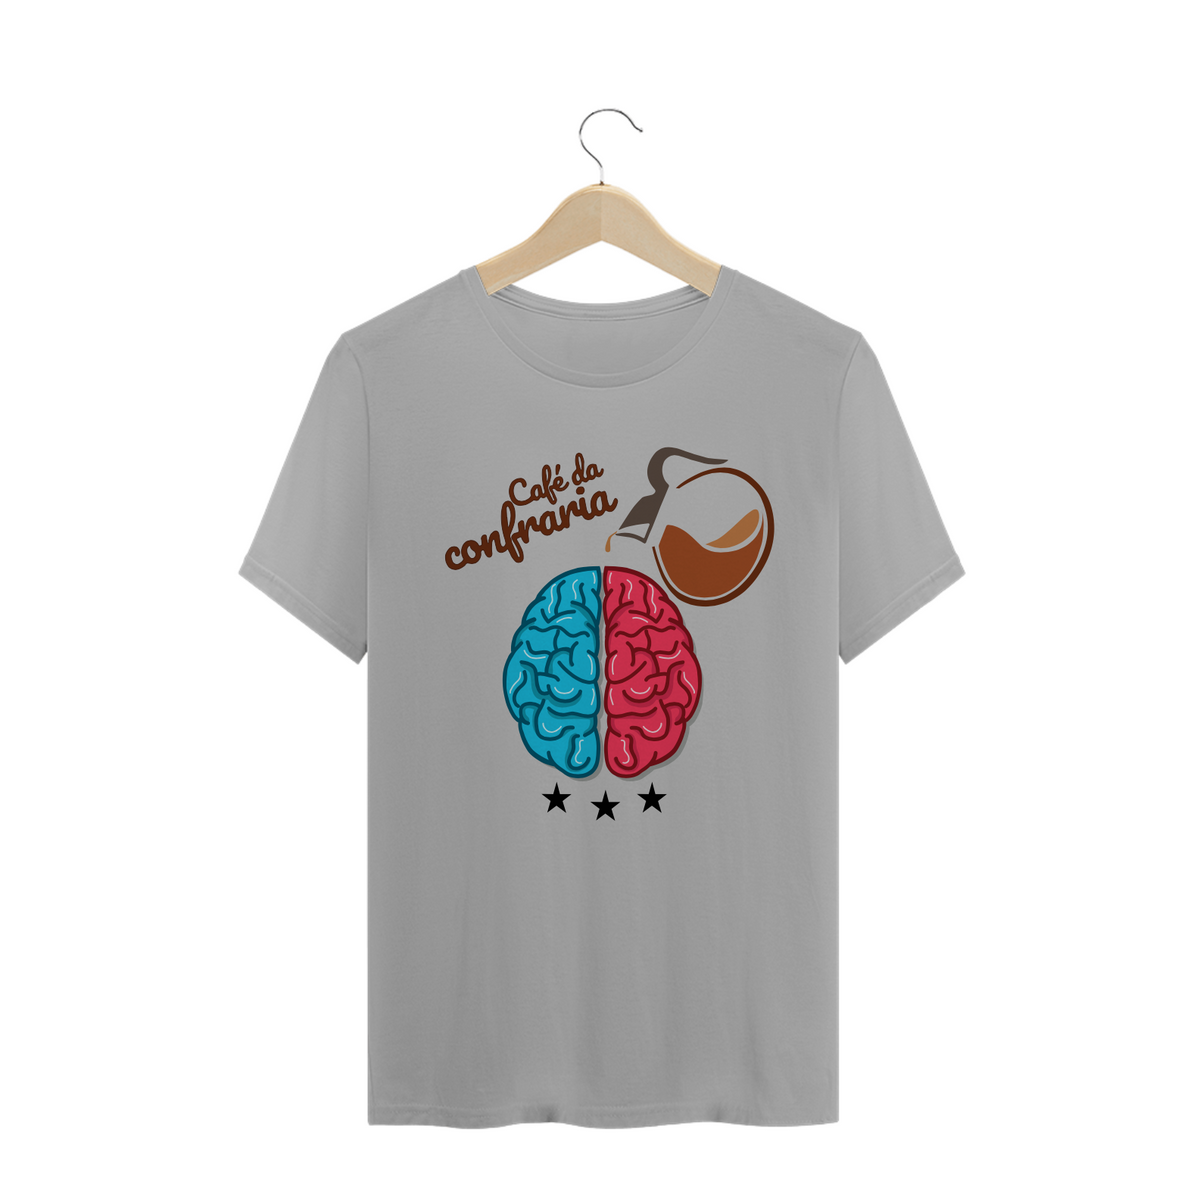 Nome do produto: Camiseta Café da Confraria